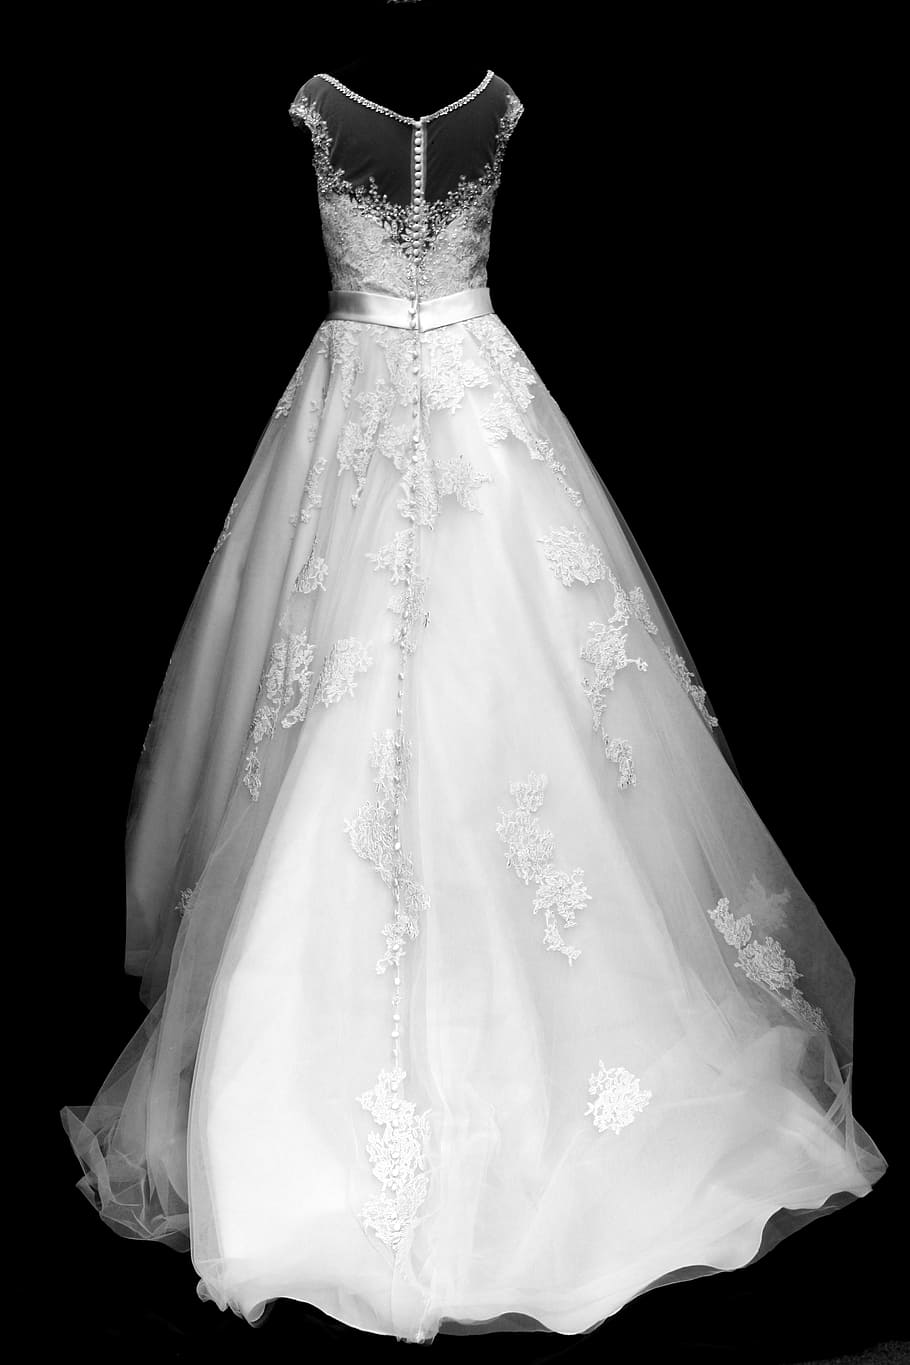 white, sleeveless wedding dress, black, background, fashion, elegant, dress, wedding, bride, style